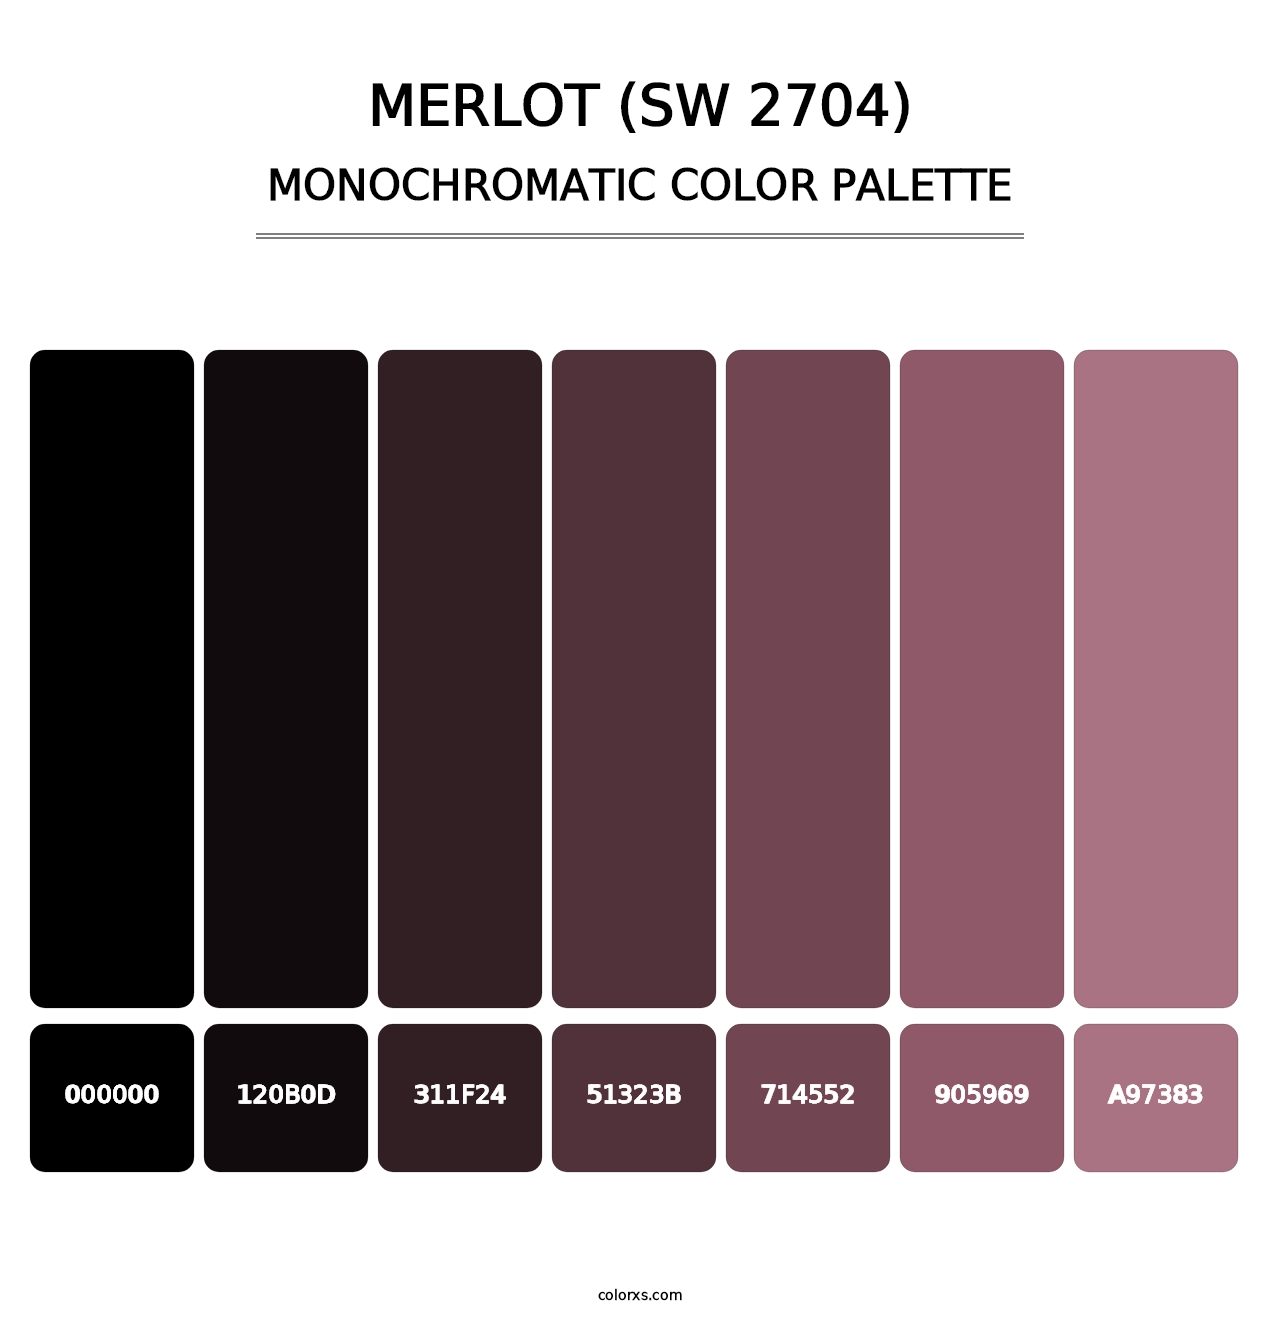 Merlot (SW 2704) - Monochromatic Color Palette